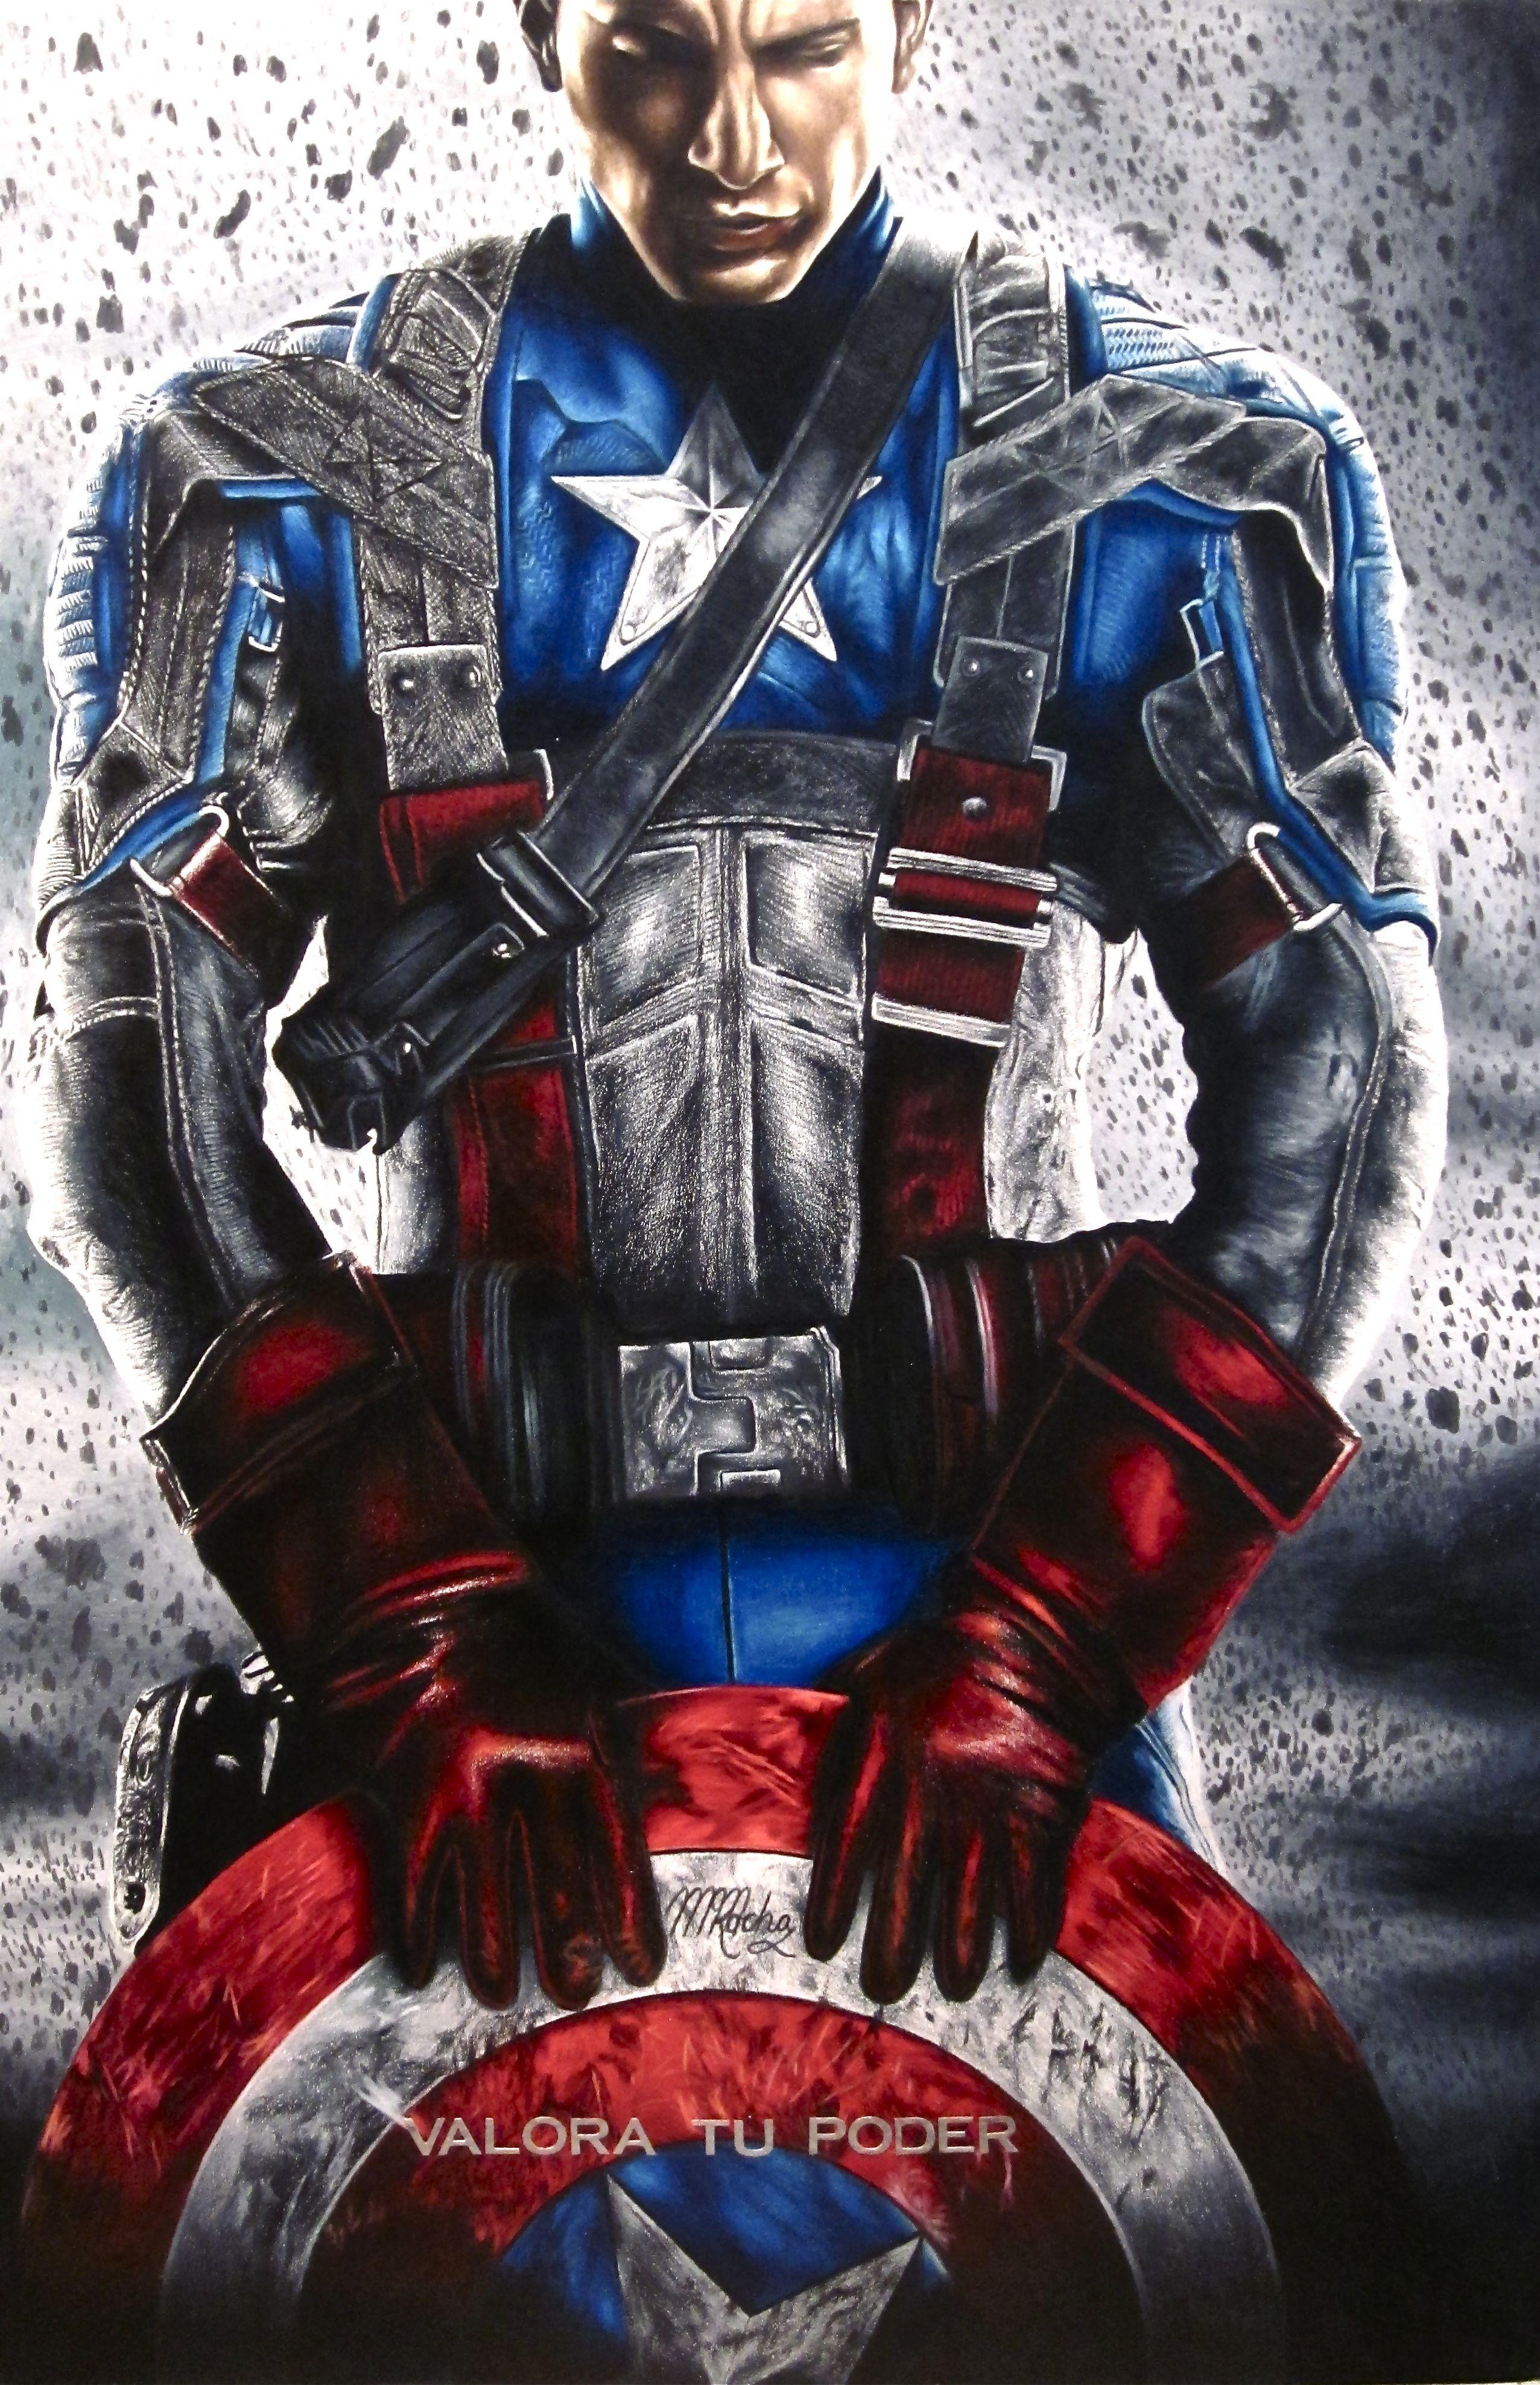 40 Gambar Wallpaper Hd Android Captain America terbaru 2020